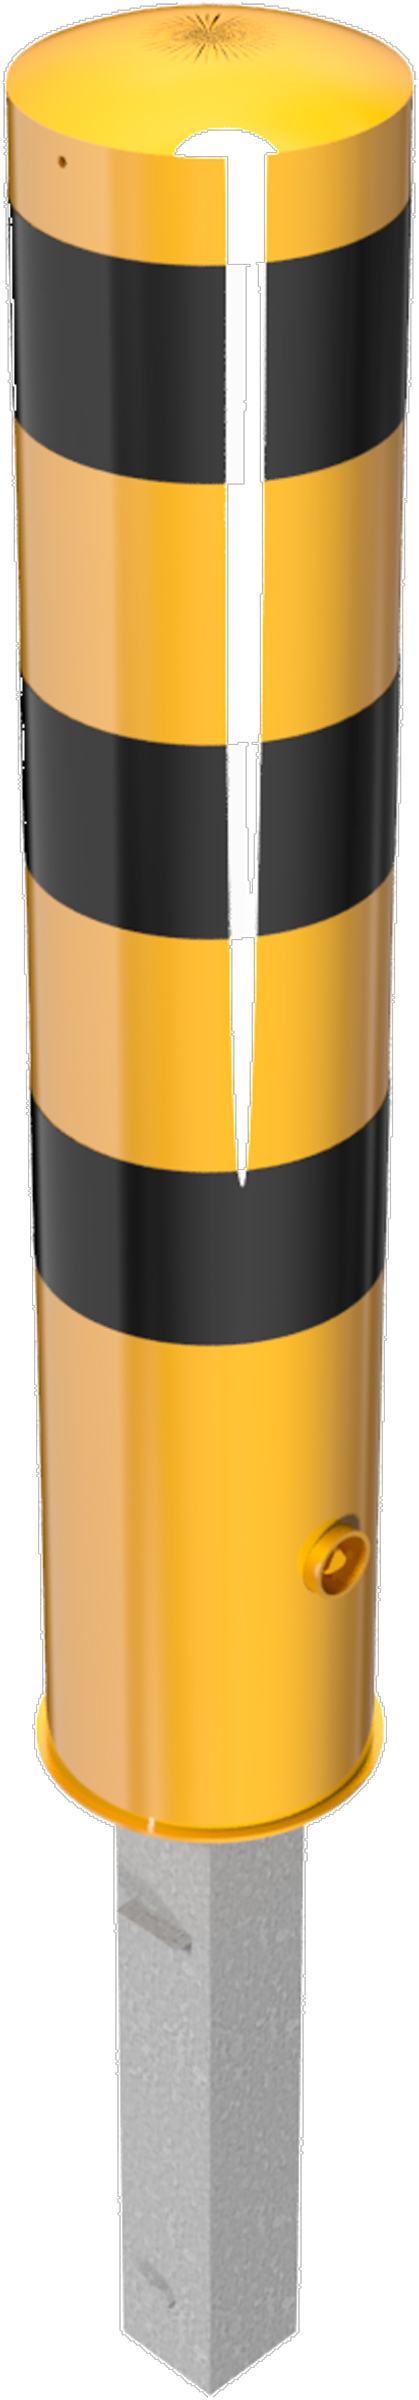 Schake Stahlrohrpoller HD Ø 193 mm gelb | schwarz - 1,50 m